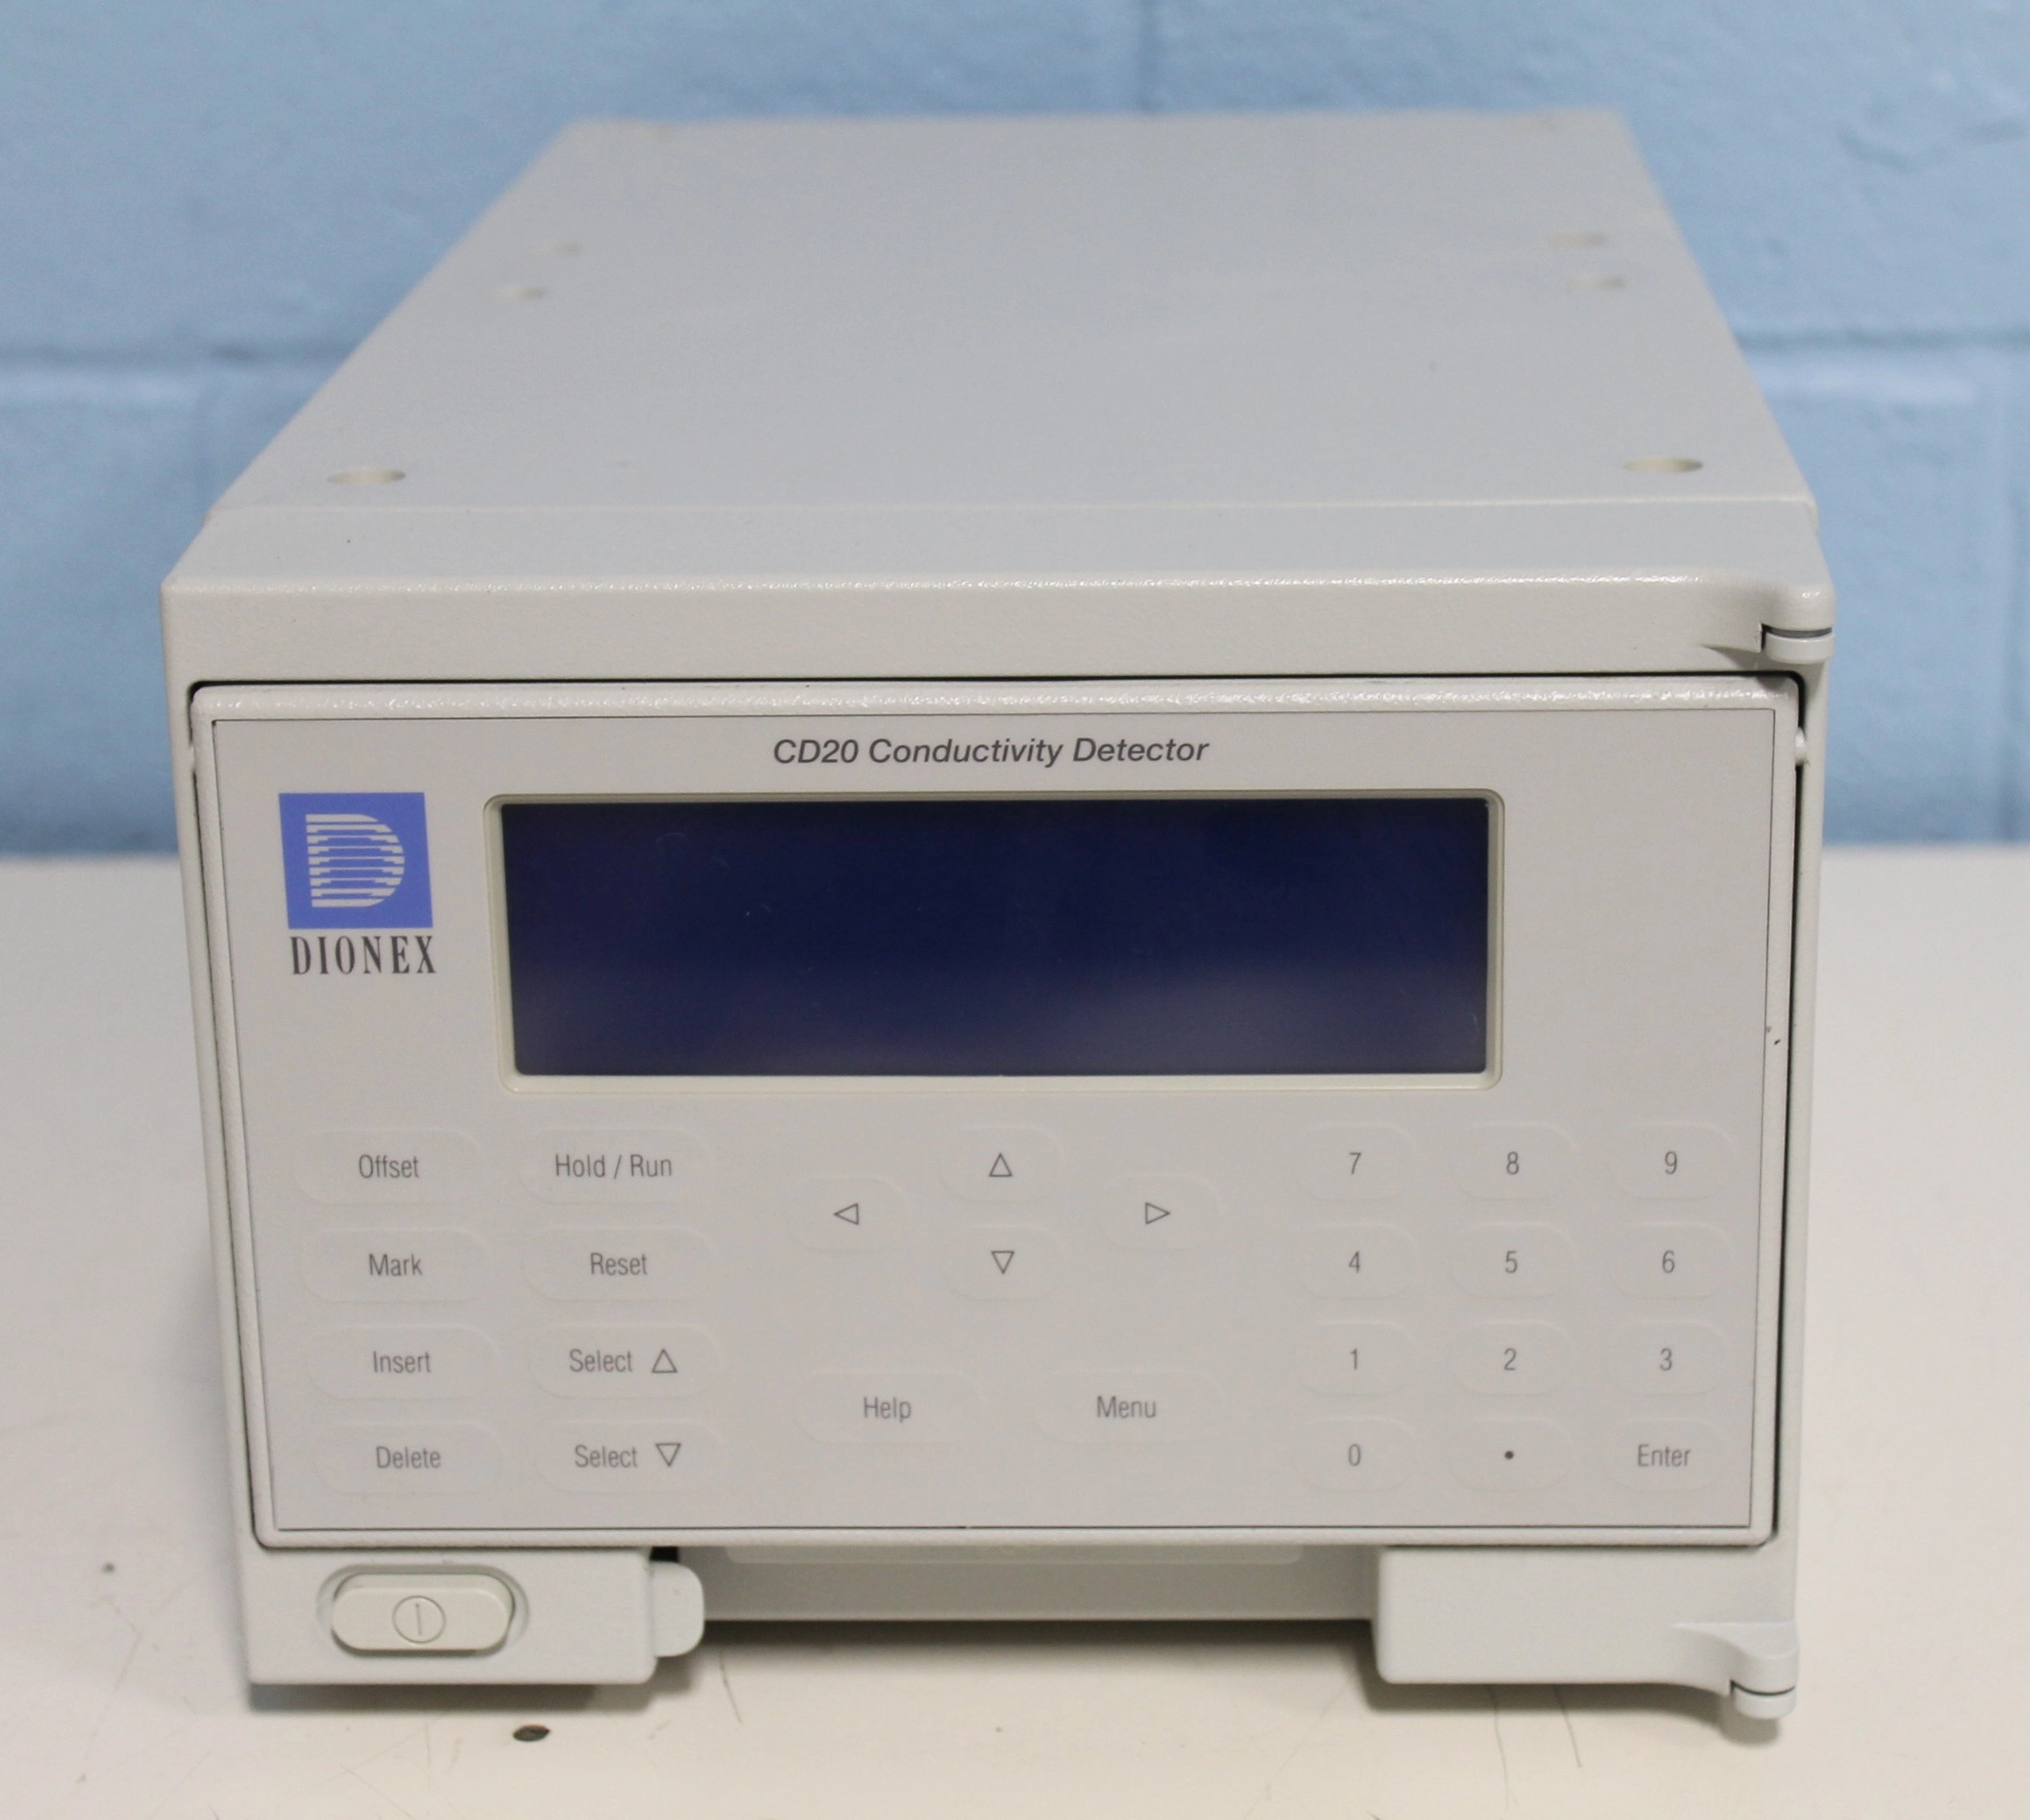 Dionex CD20 Conductivity Detector